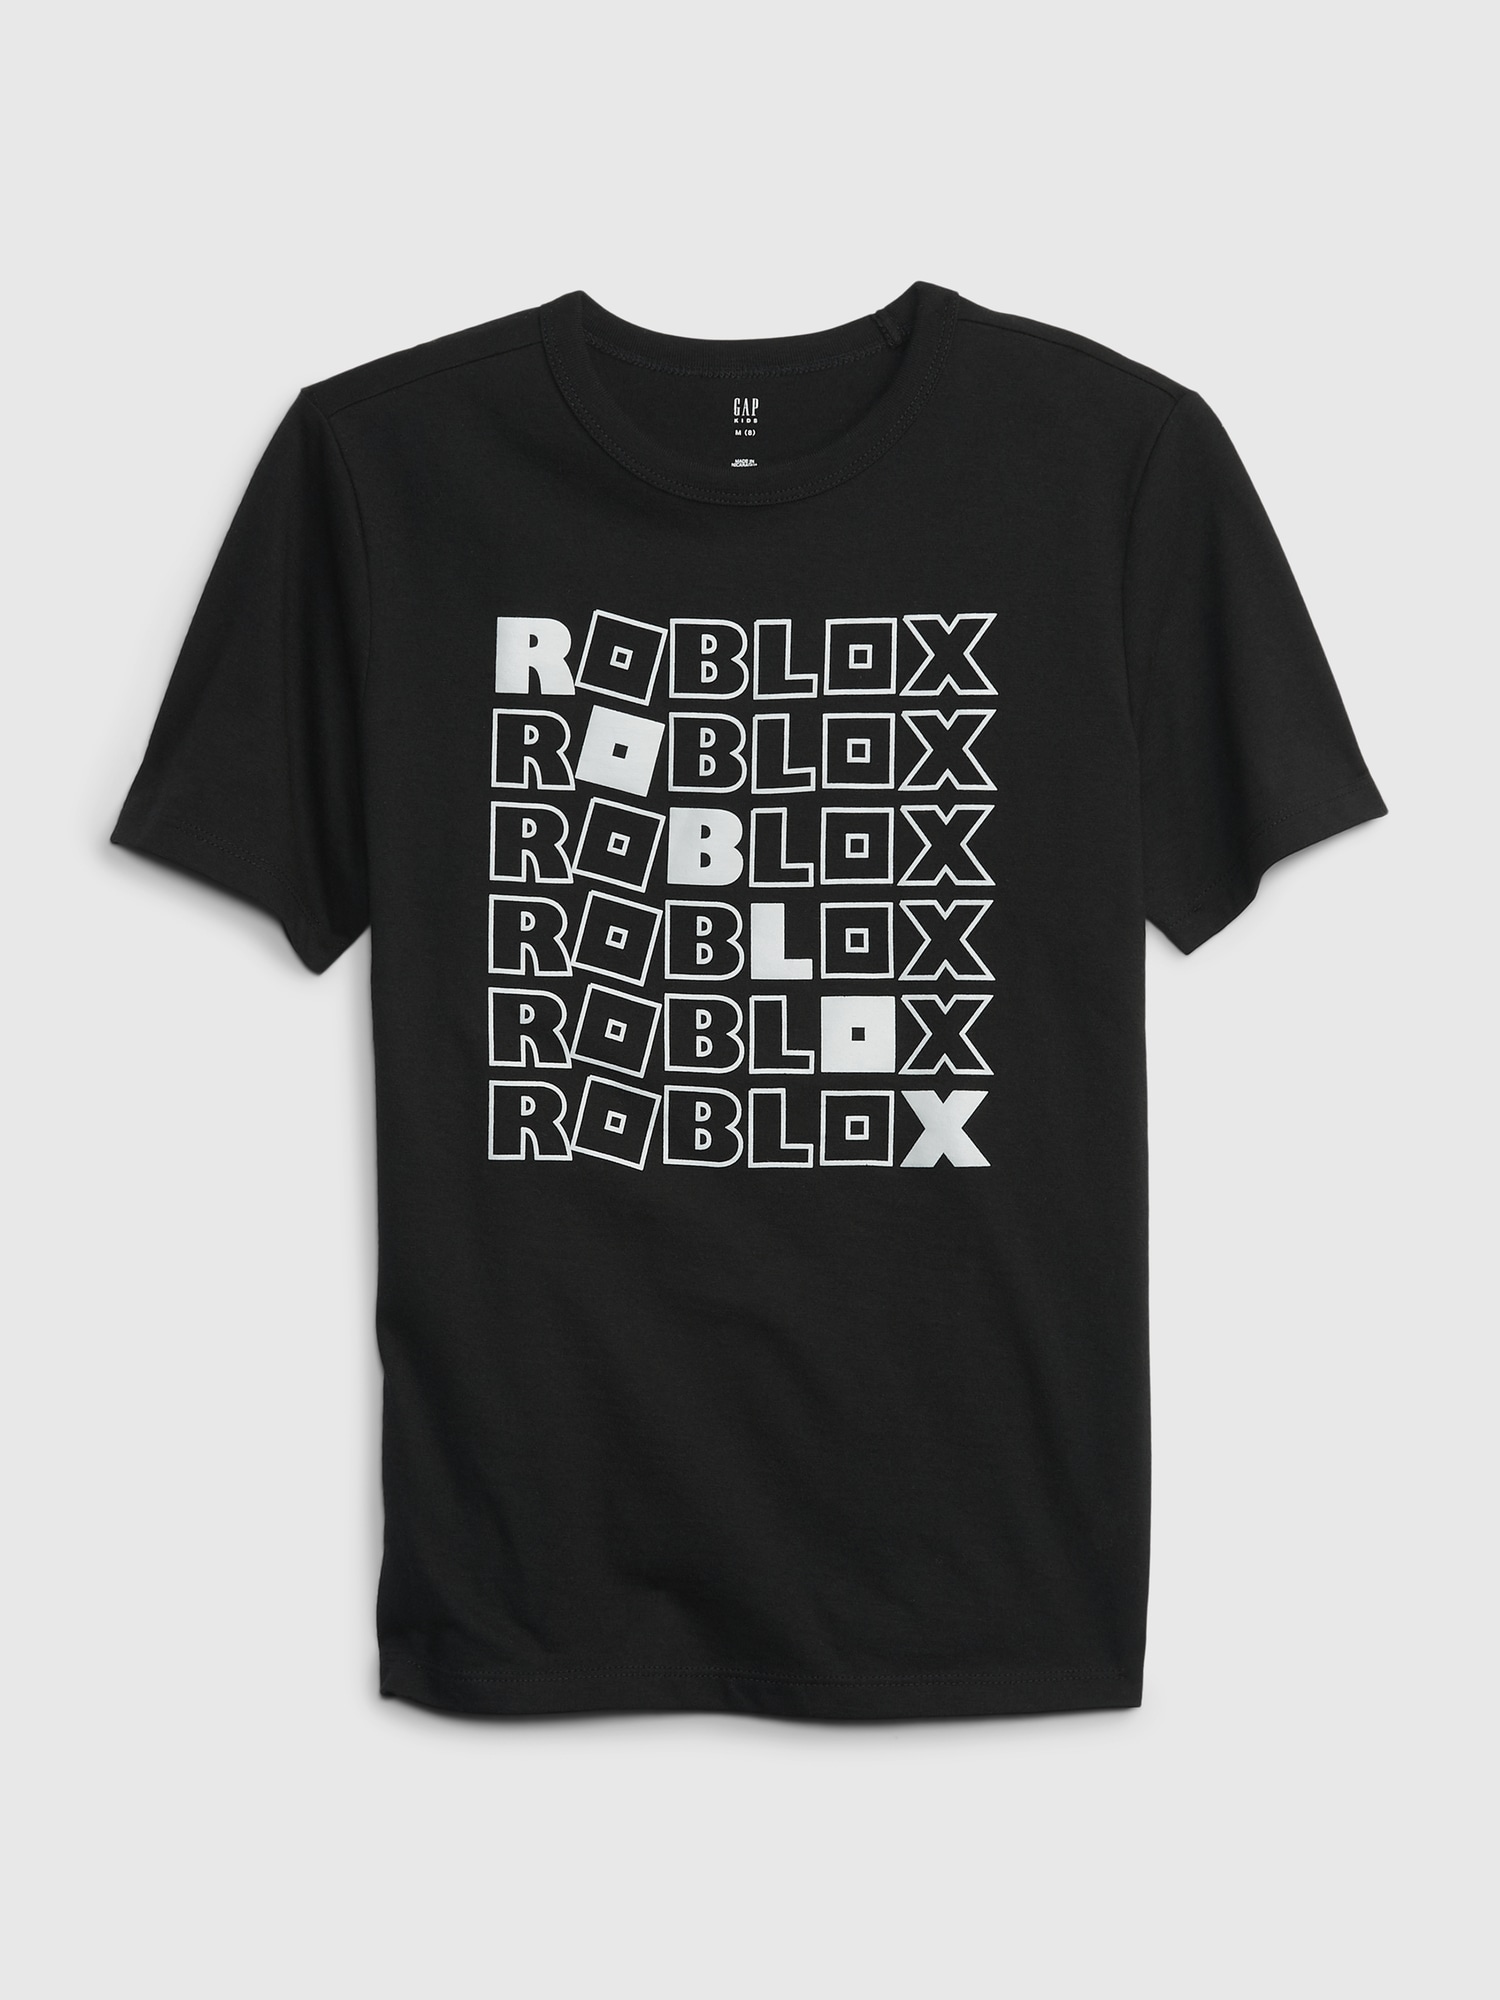 Roblox shirt Kids Size XL Gray Short Sleeve